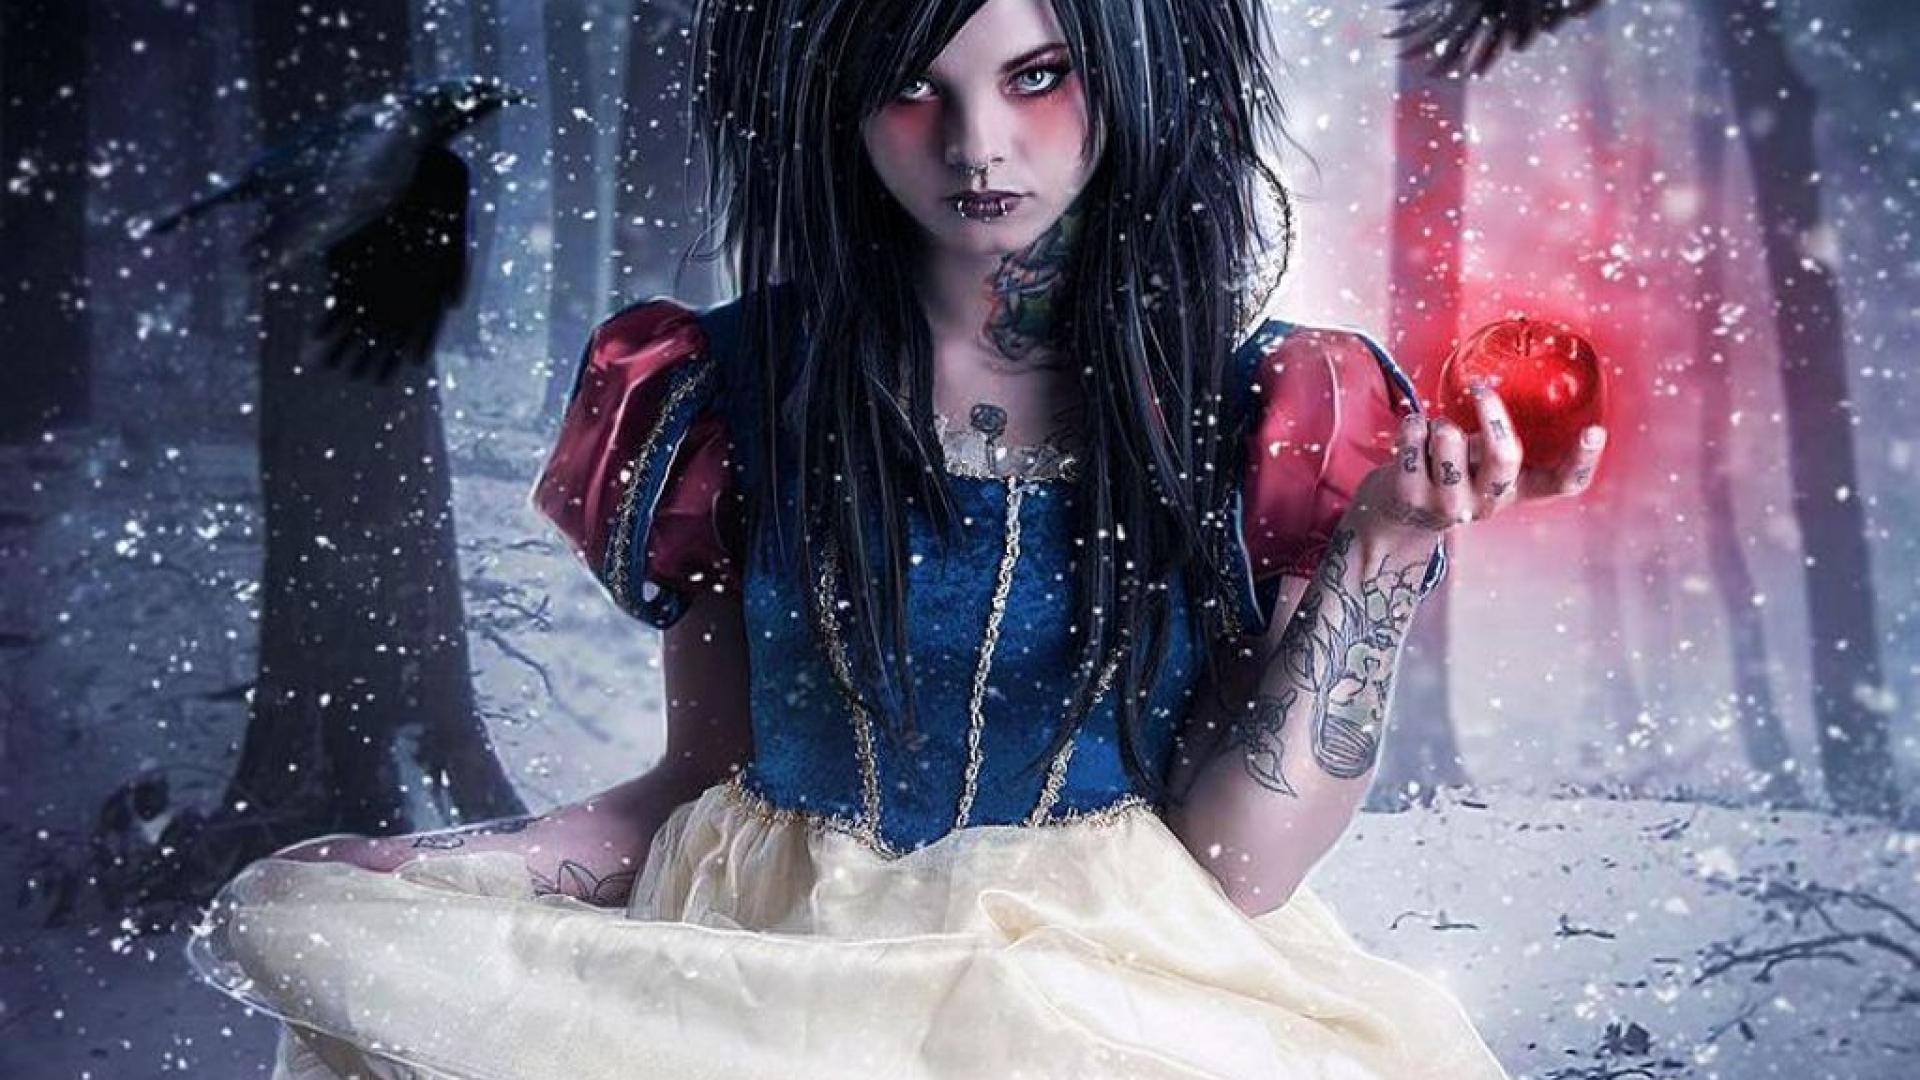 Gothic Snow White